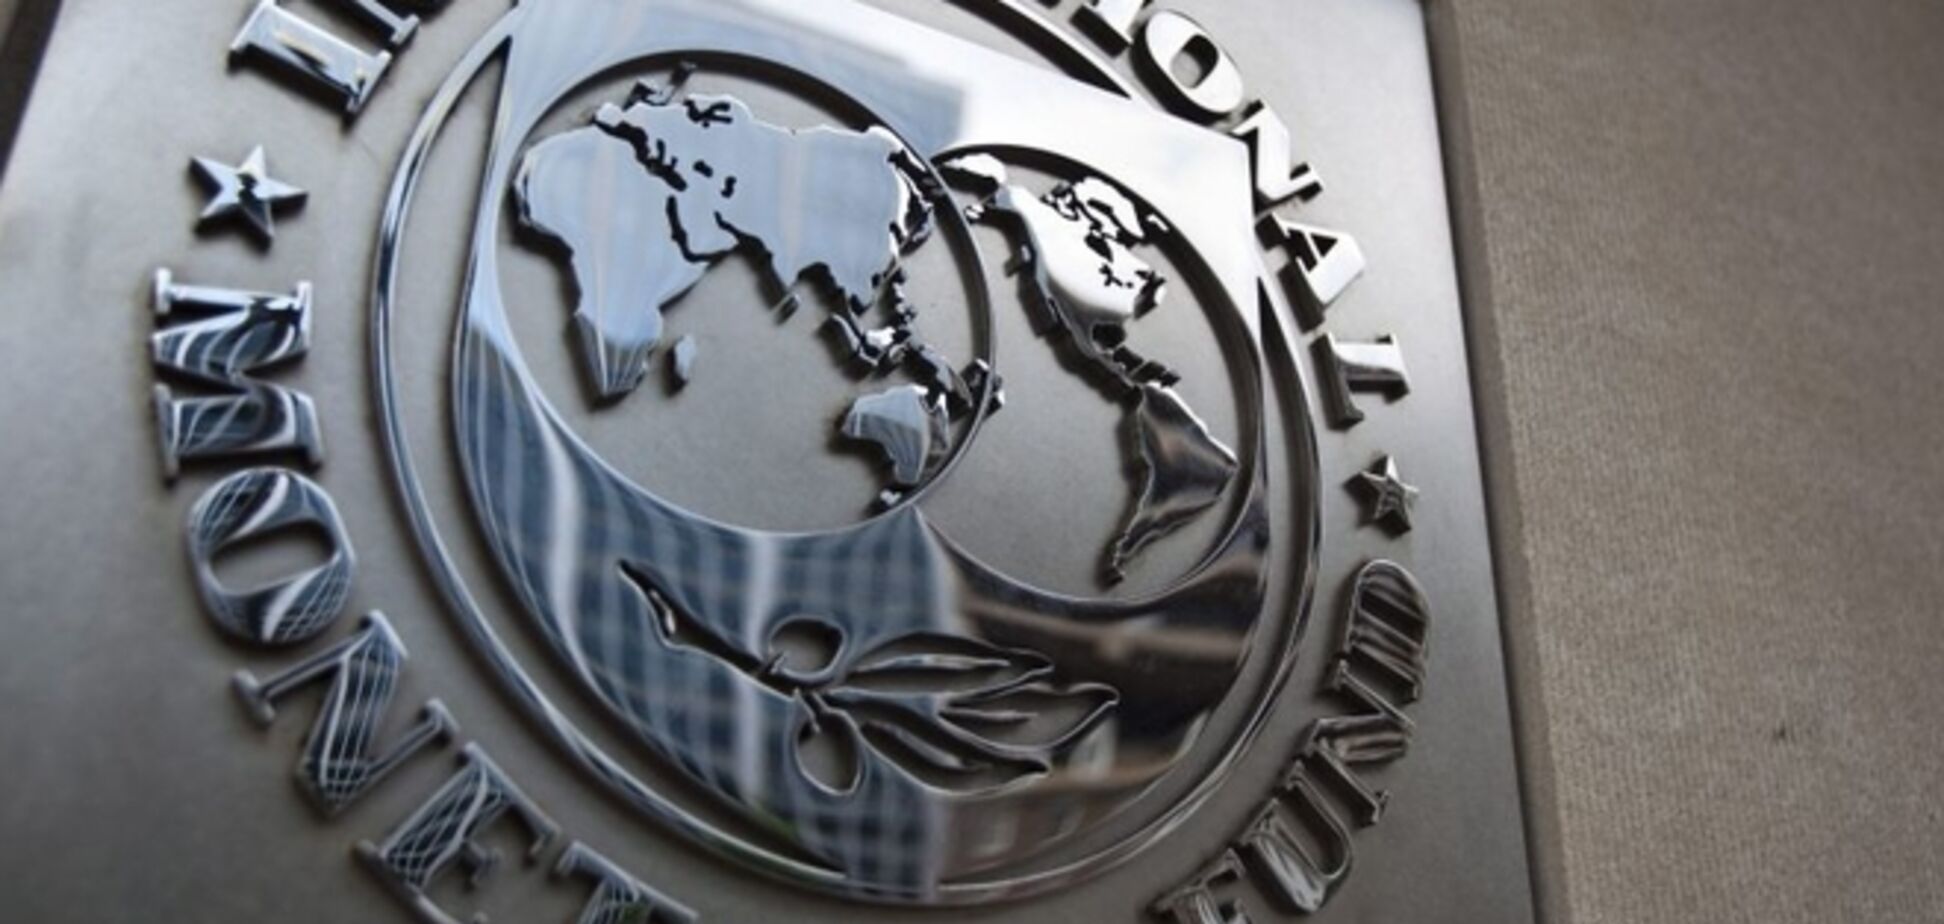 Кабмин утвердил Меморандум сотрудничества с МВФ. Детали